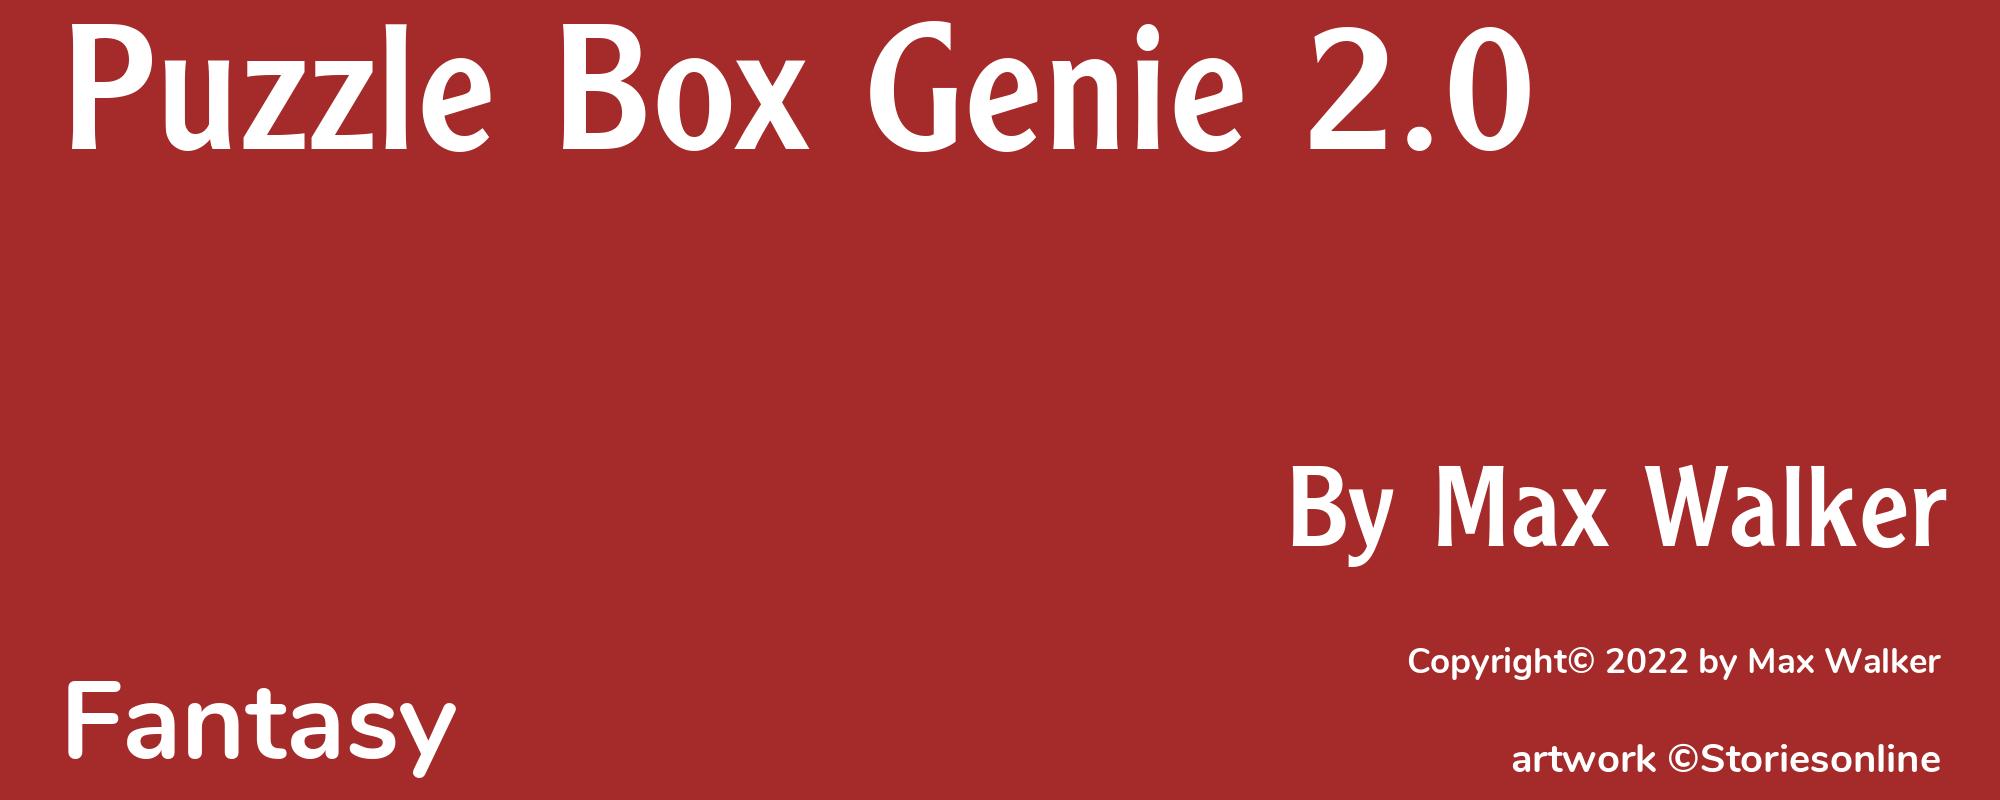 Puzzle Box Genie 2.0 - Cover